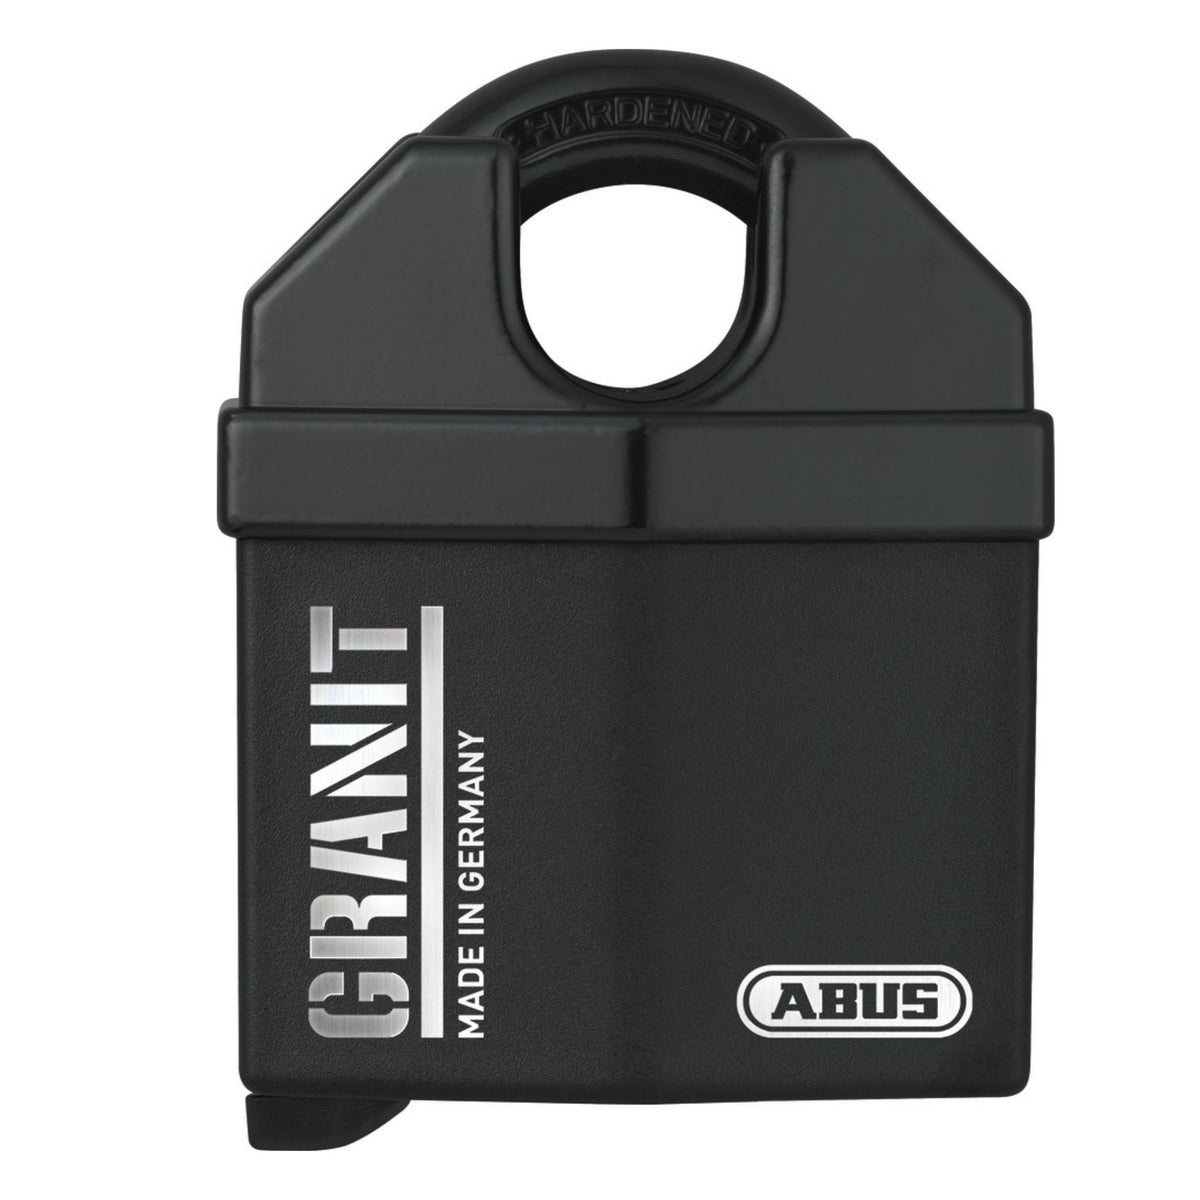 Abus 37/60 C KD Granit Padlock Black Granite Locks Individually Carded for Retail Display - The Lock Source